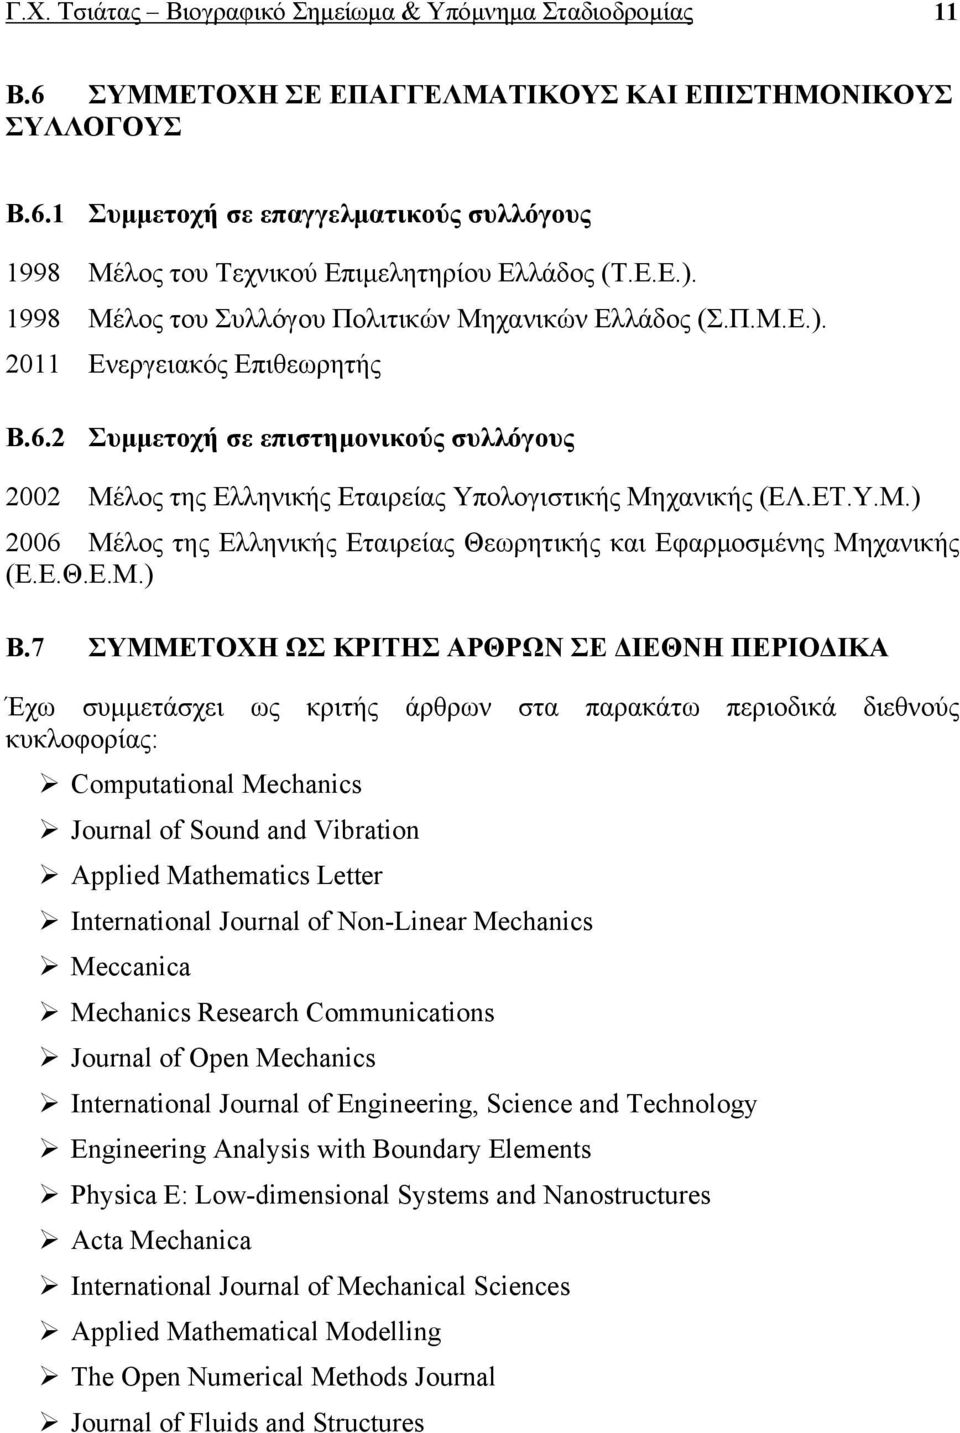 2 Συμμετοχή σε επιστημονικούς συλλόγους 2002 Μέλος της Ελληνικής Εταιρείας Υπολογιστικής Μηχανικής (ΕΛ.ΕΤ.Υ.Μ.) 2006 Μέλος της Ελληνικής Εταιρείας Θεωρητικής και Εφαρμοσμένης Μηχανικής (Ε.Ε.Θ.Ε.Μ.) Β.